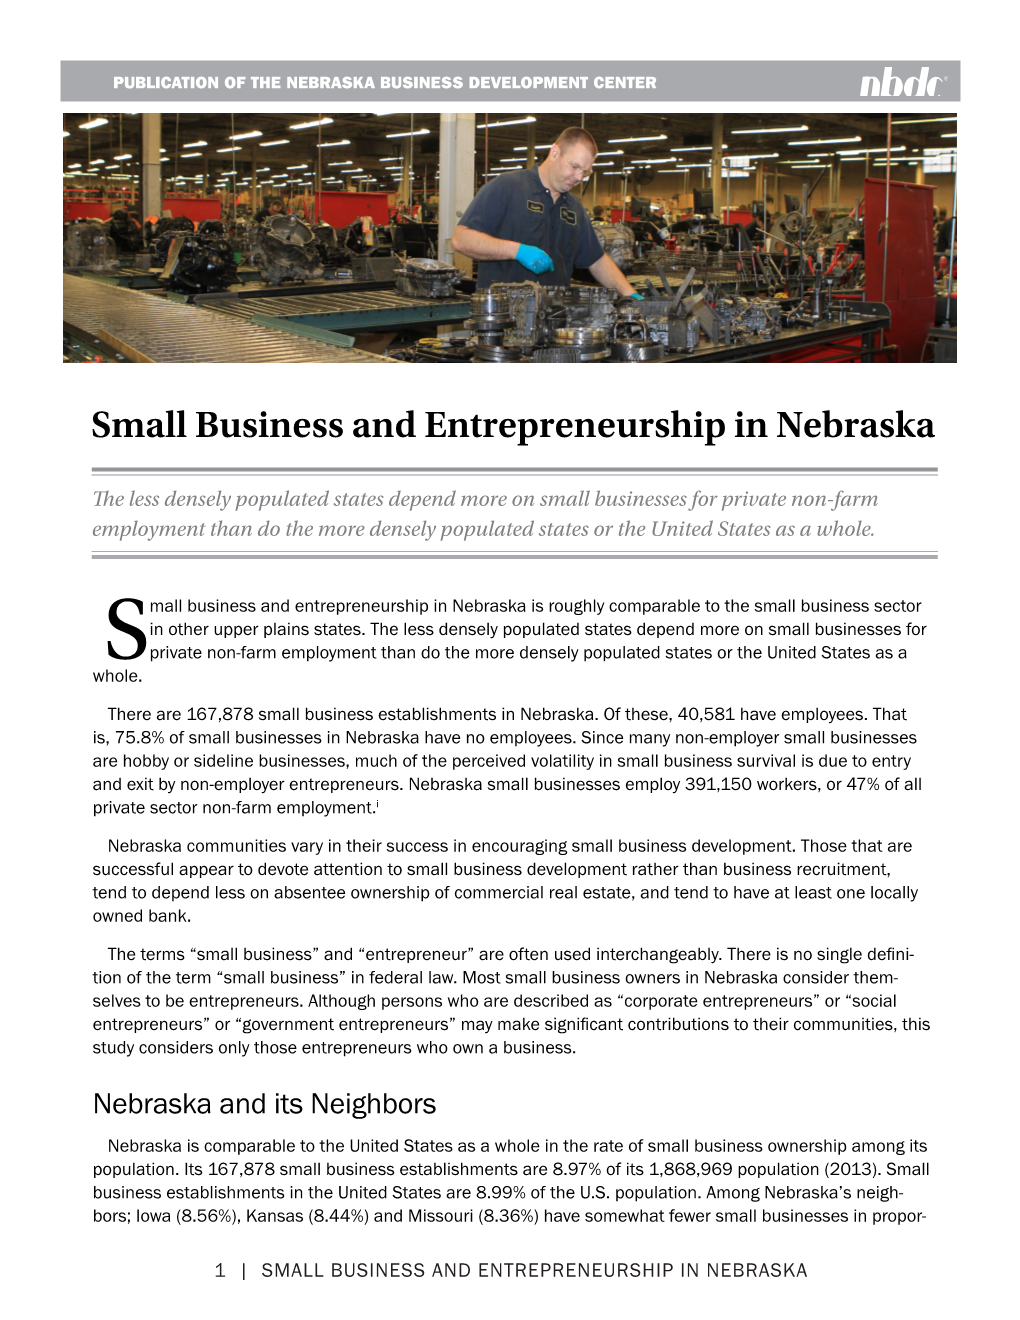 Small Business and Entrepreneurship in Nebraska